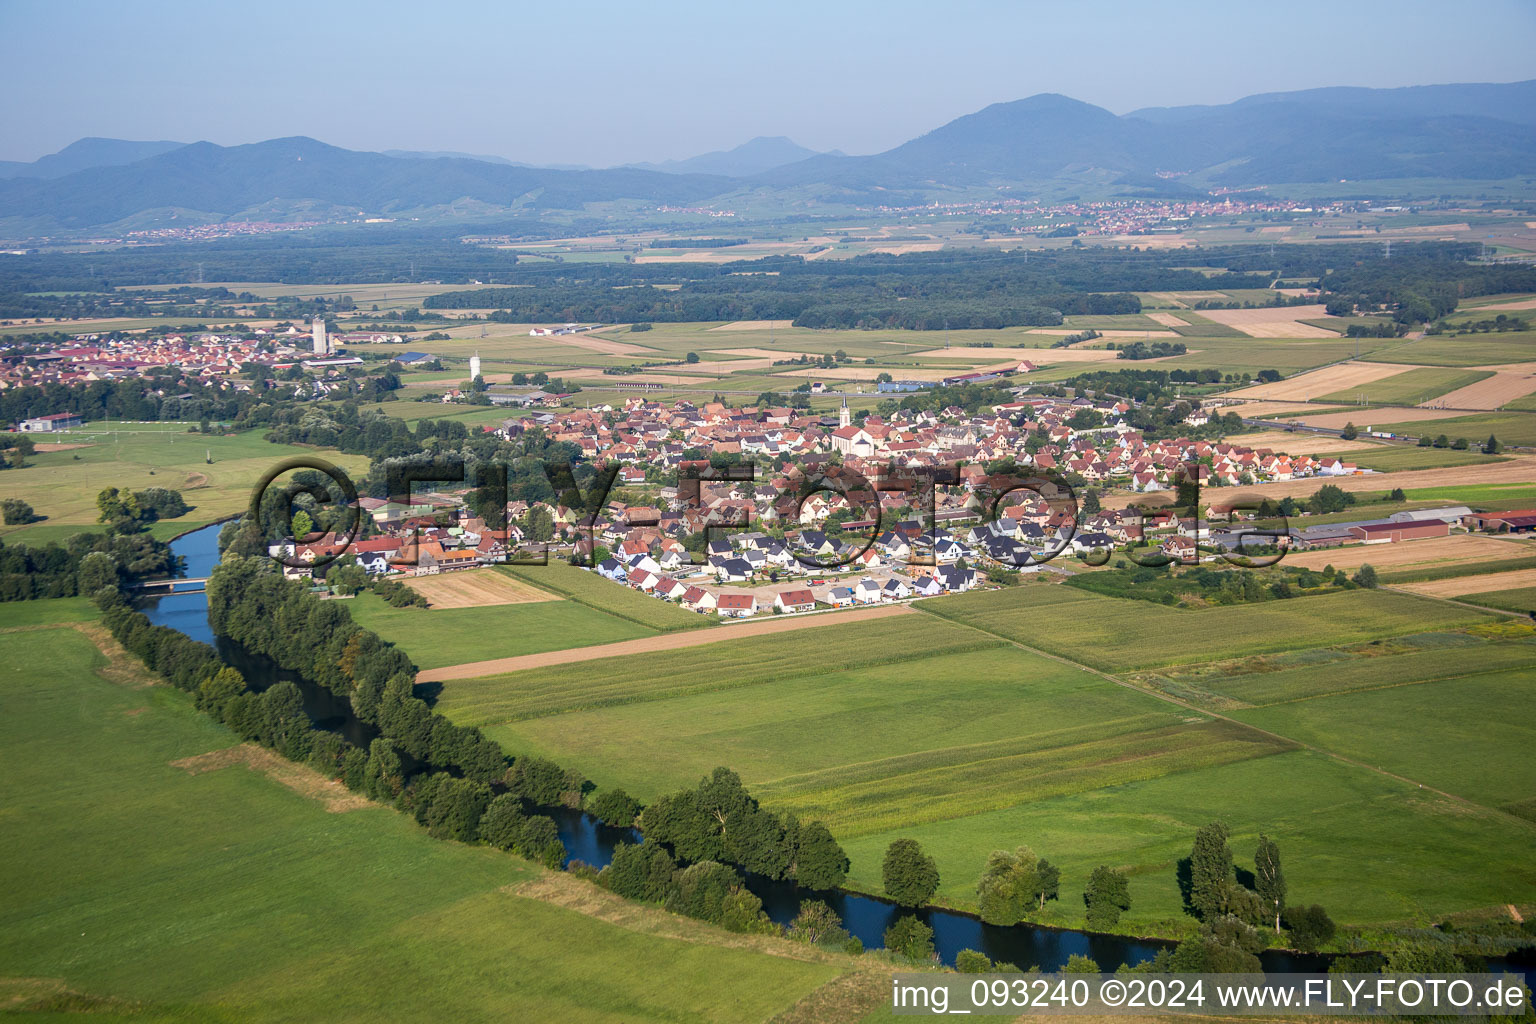 Vue aérienne de Bords de l'Ill face au panorama de la lisière vosgienne à Sermersheim dans le département Bas Rhin, France